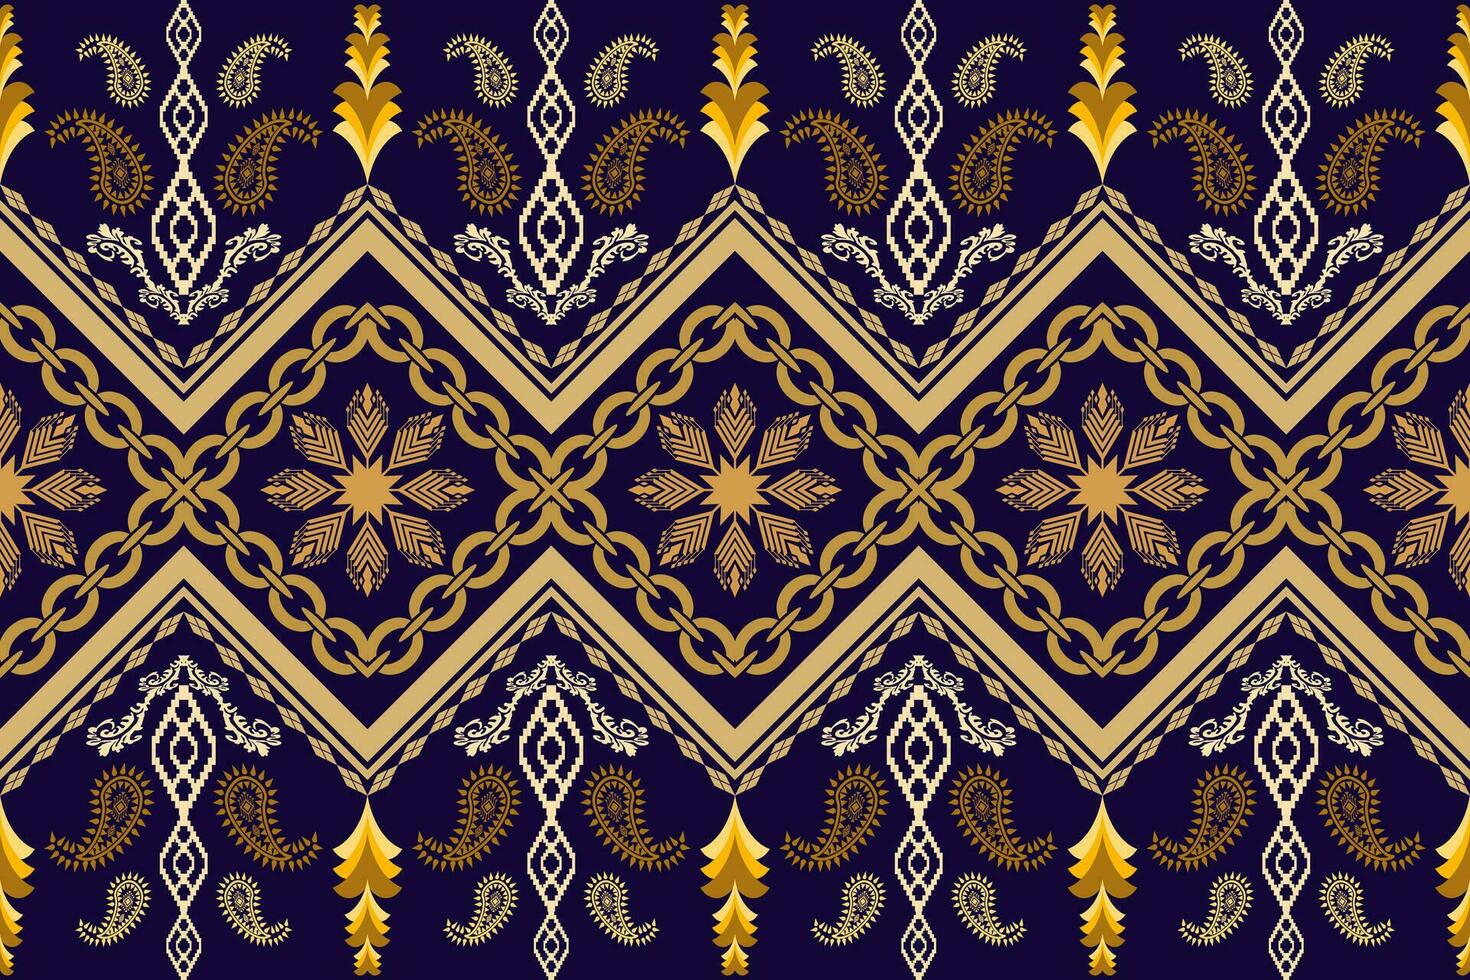 geometriska etniska orientaliska traditionell konst pattern.figure tribal broderi style.design för bakgrund, tapeter, kläder, inslagning, tyg, element,, vektorillustration. vektor